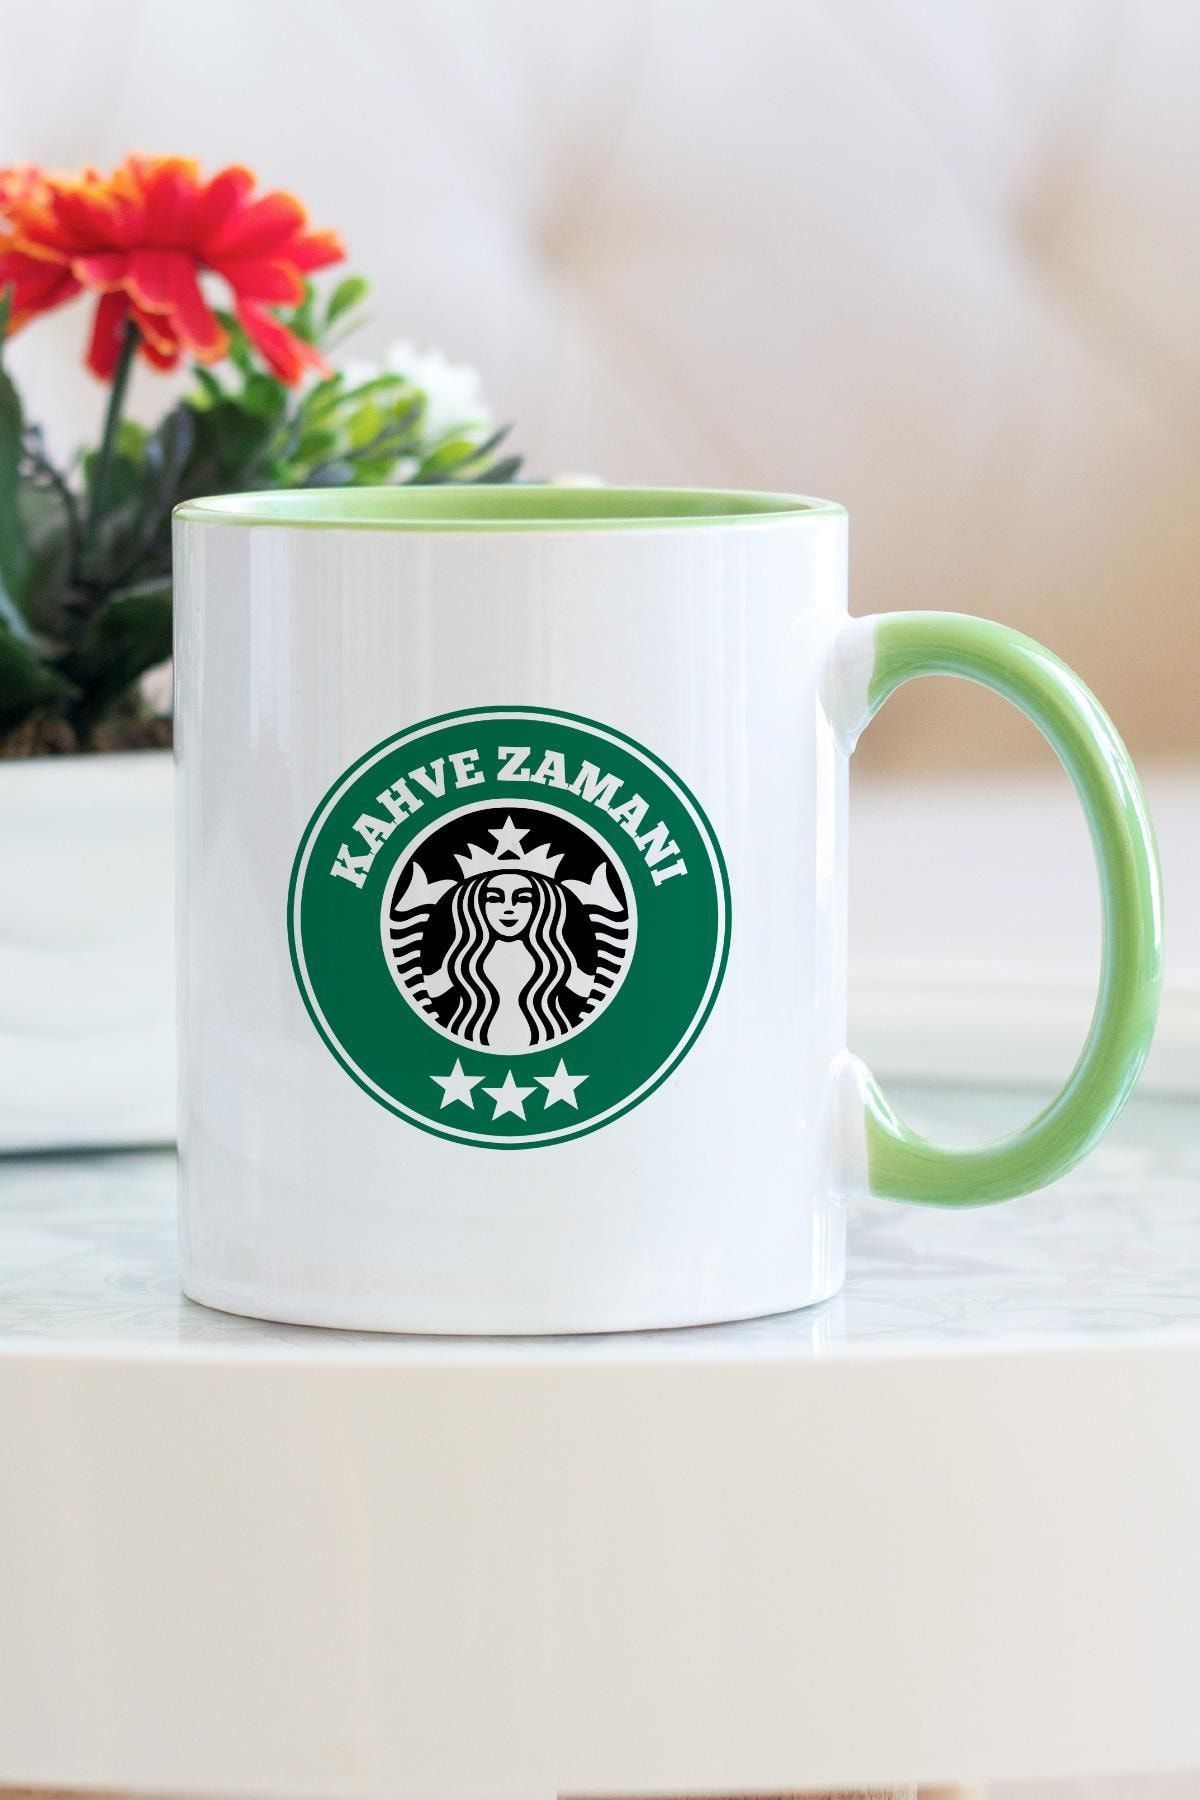 Hediyehanem Starbucks Kahve Zamanı Yeşil Kupa Bardak